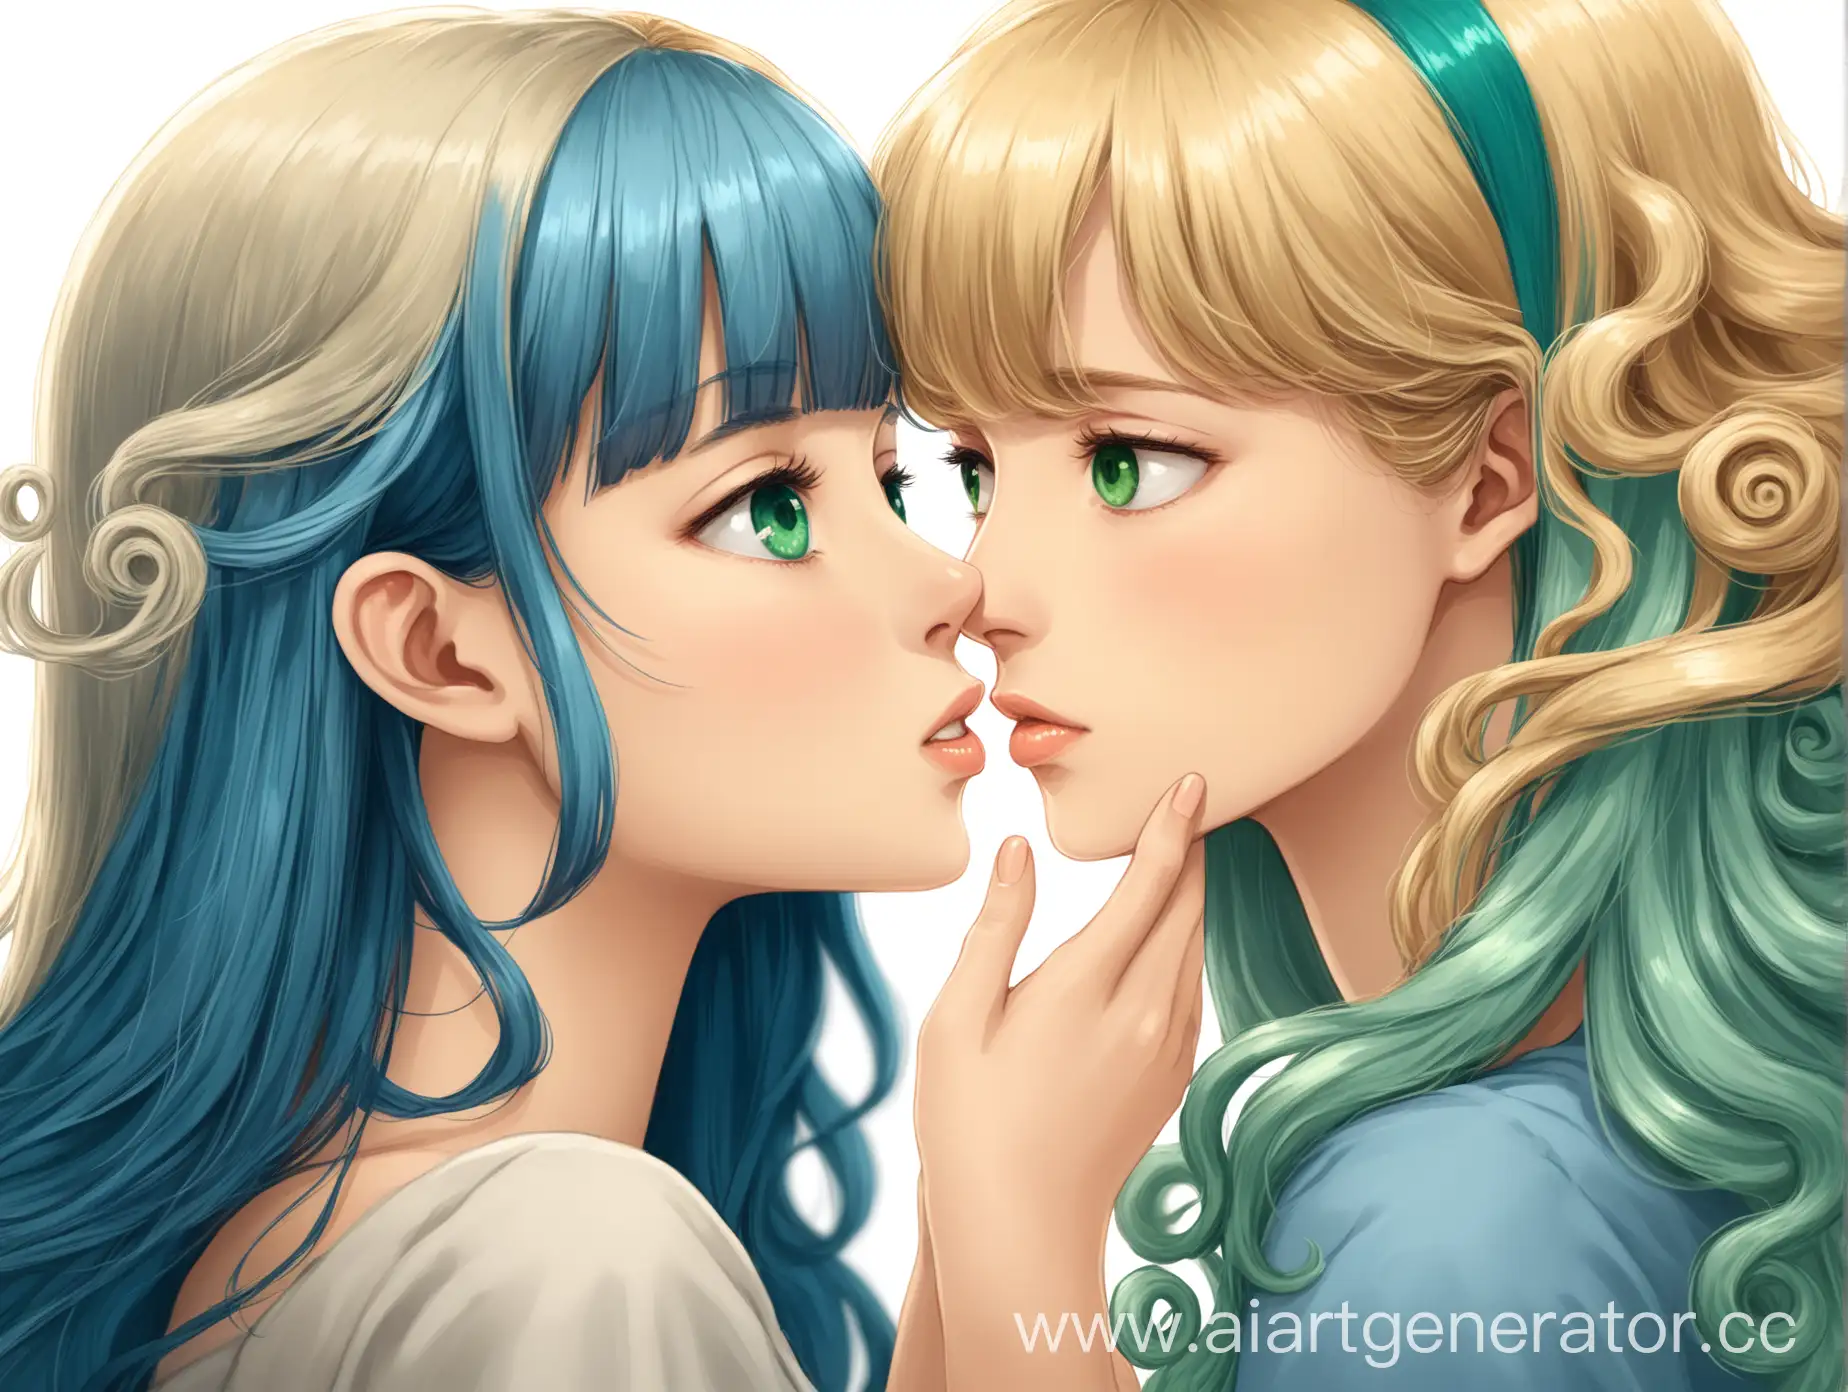 Блондинка с длинными прямыми волосами и чёлкой с зелеными глазами целует вторую девушку с голубым каре и карими глазами